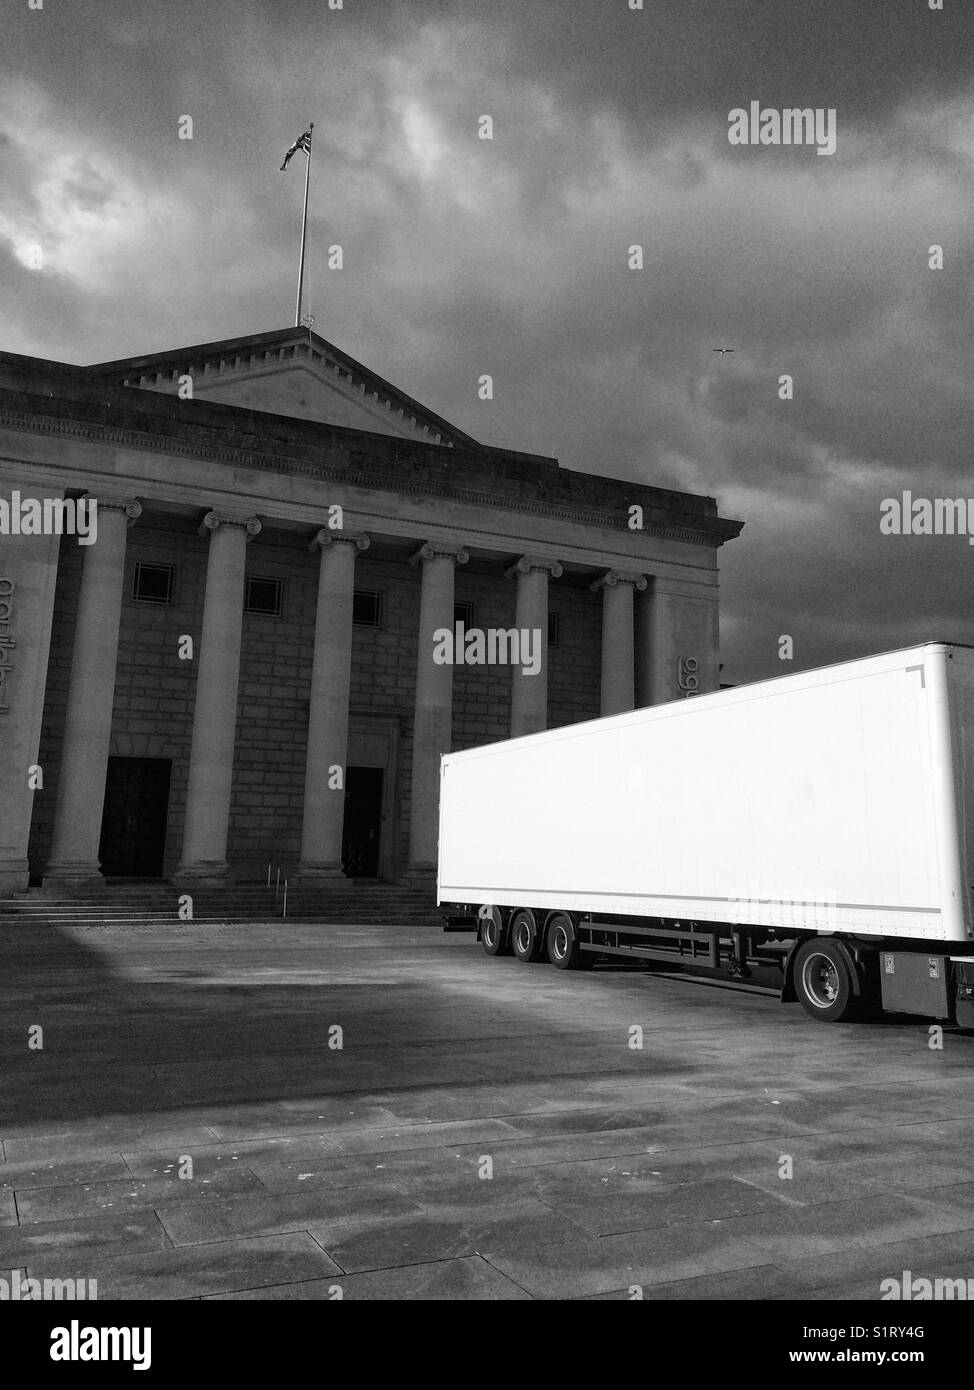 Camion blanc à Southampton Guildhall Banque D'Images